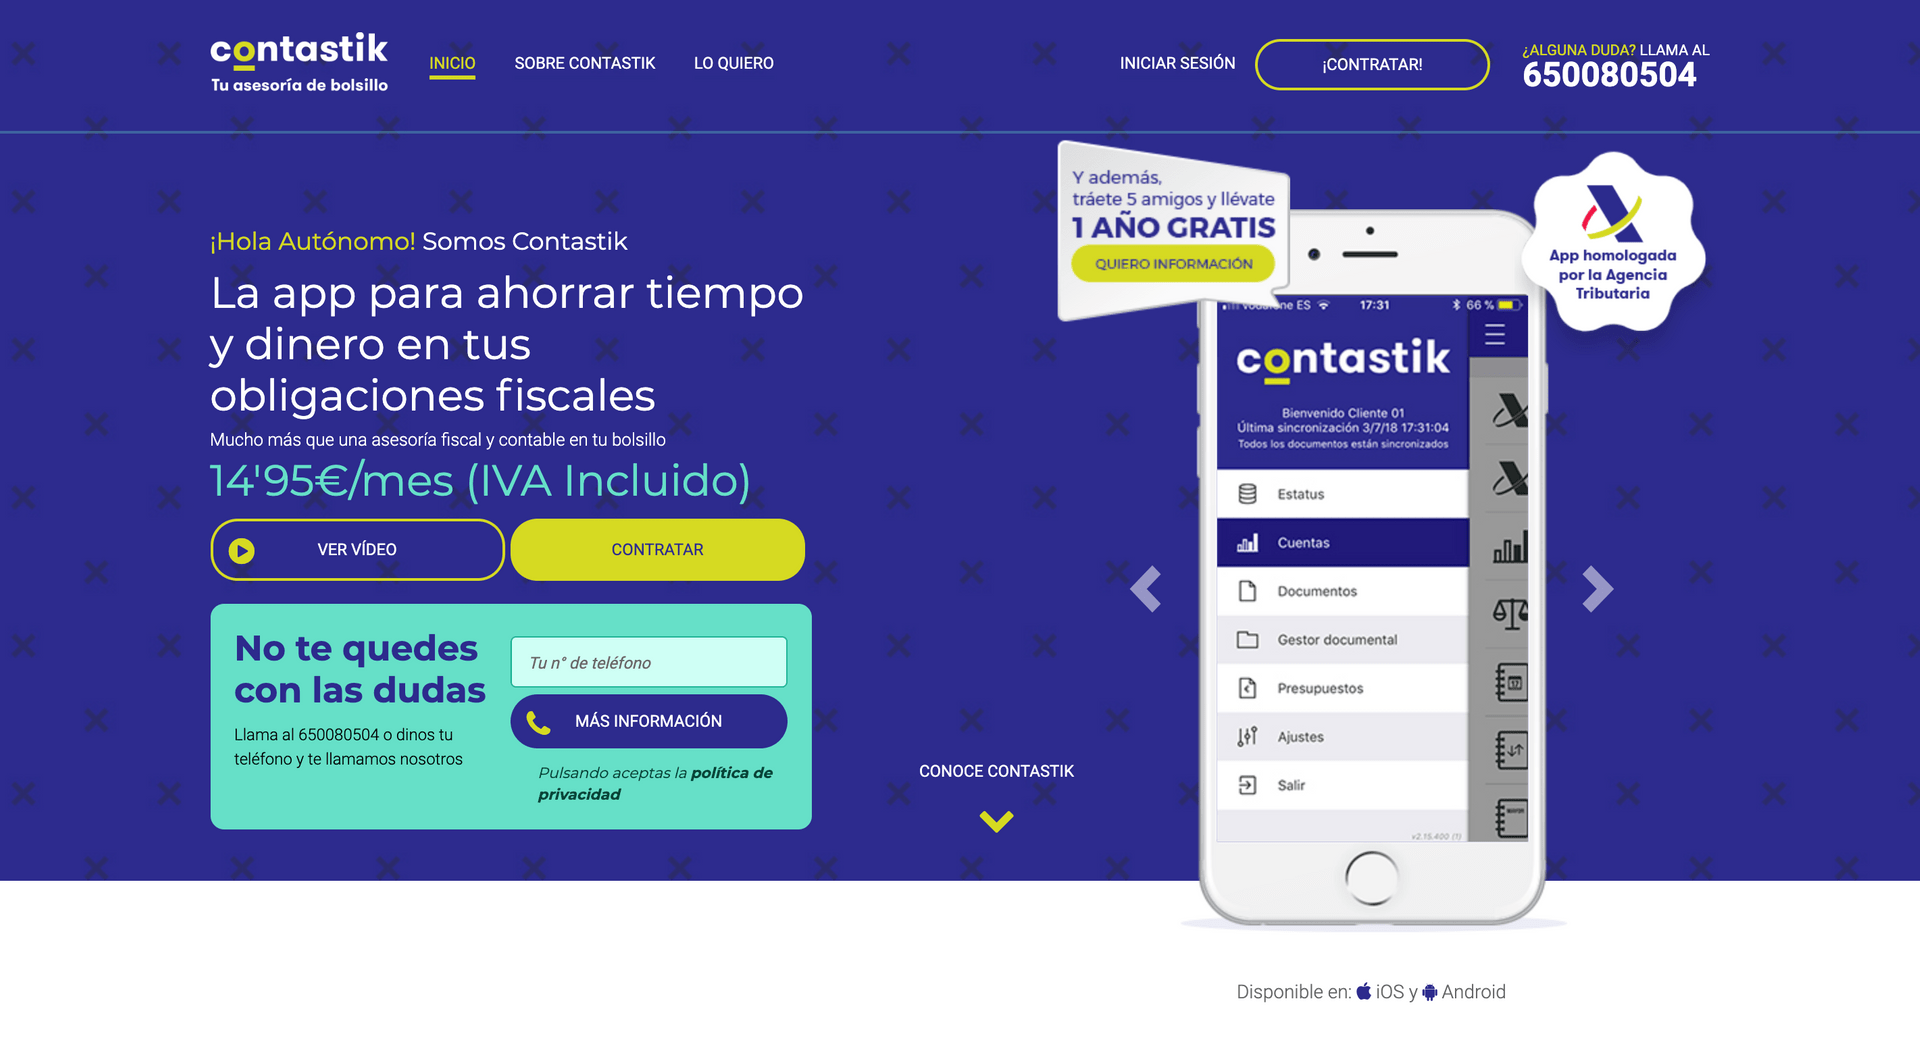 Captura de pantalla de la web oficial de Contastik